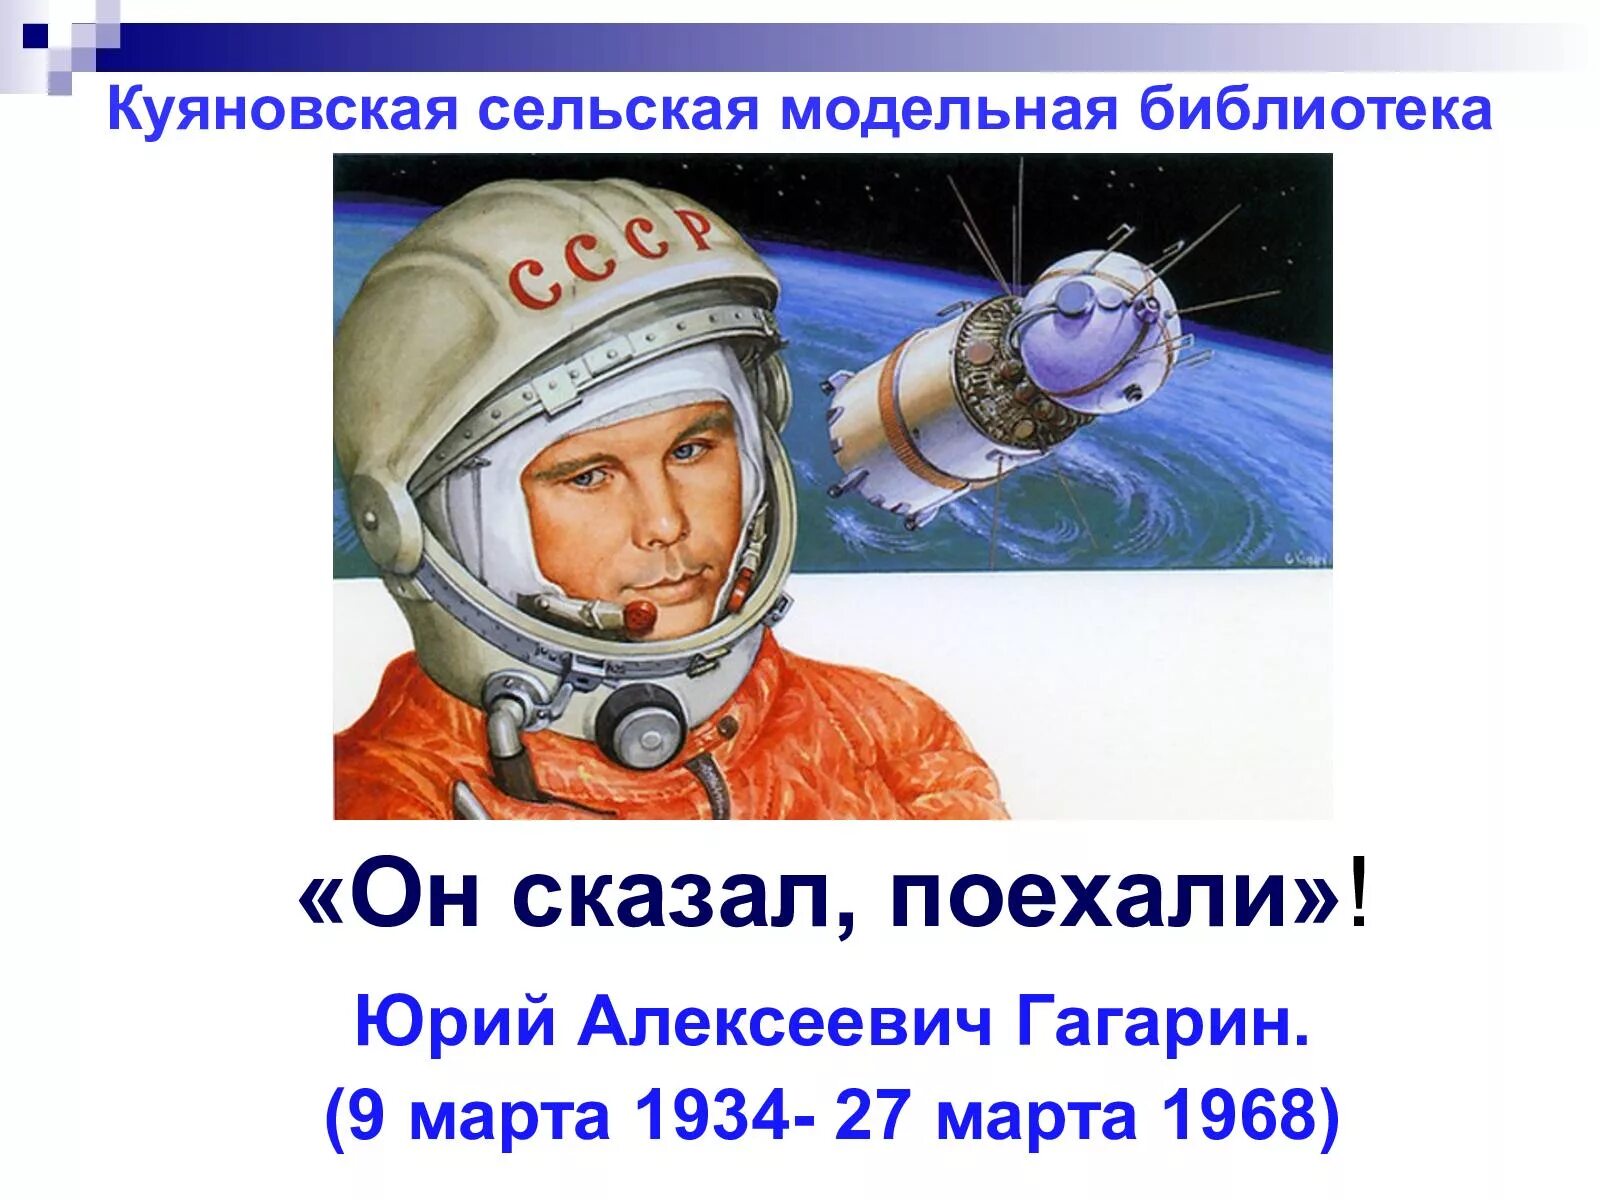 Первые слова гагарина. Он сказал поехали. Гагарин сказал поехали. День космонавтики.